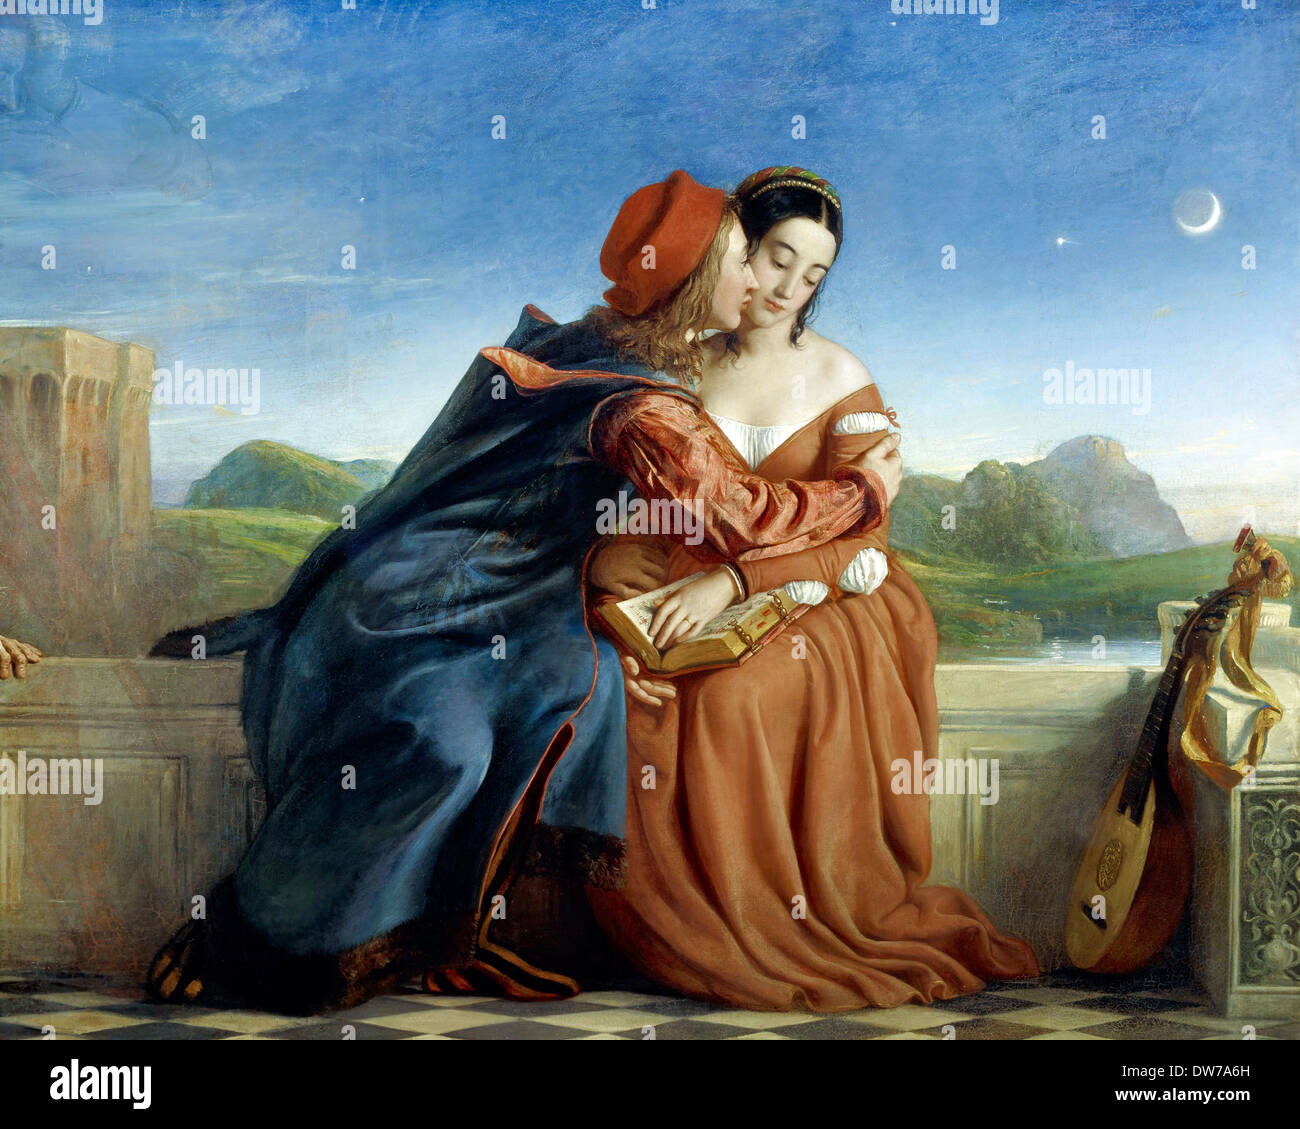 William Dyce, Francesca da Rimini 1837 Huile sur toile. Scottish National Gallery, Édimbourg. Banque D'Images